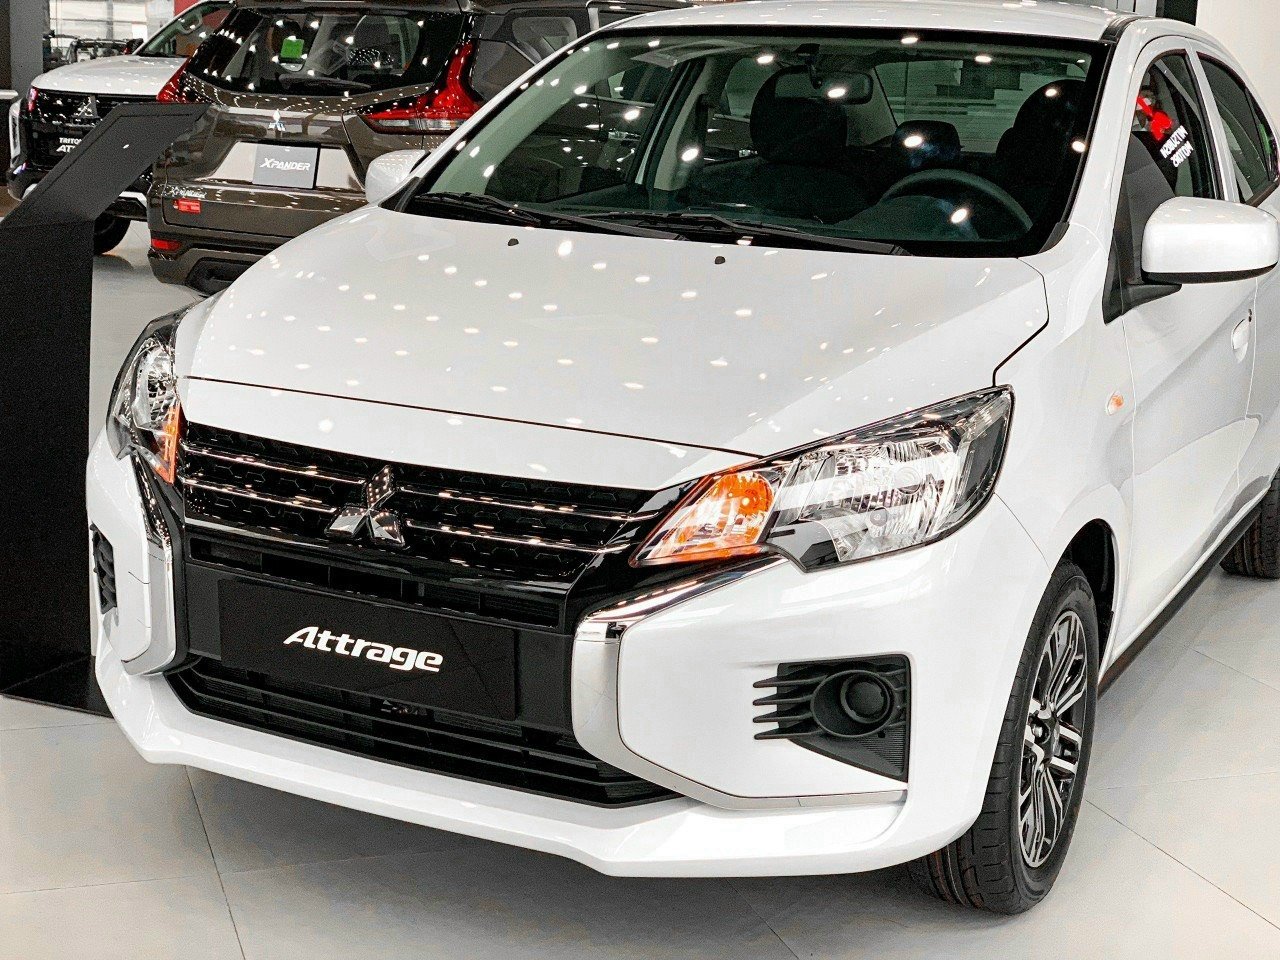 Chi tiết xe Mitsubishi Attrage MT - Giá bán, hình ảnh, khuyến mãi